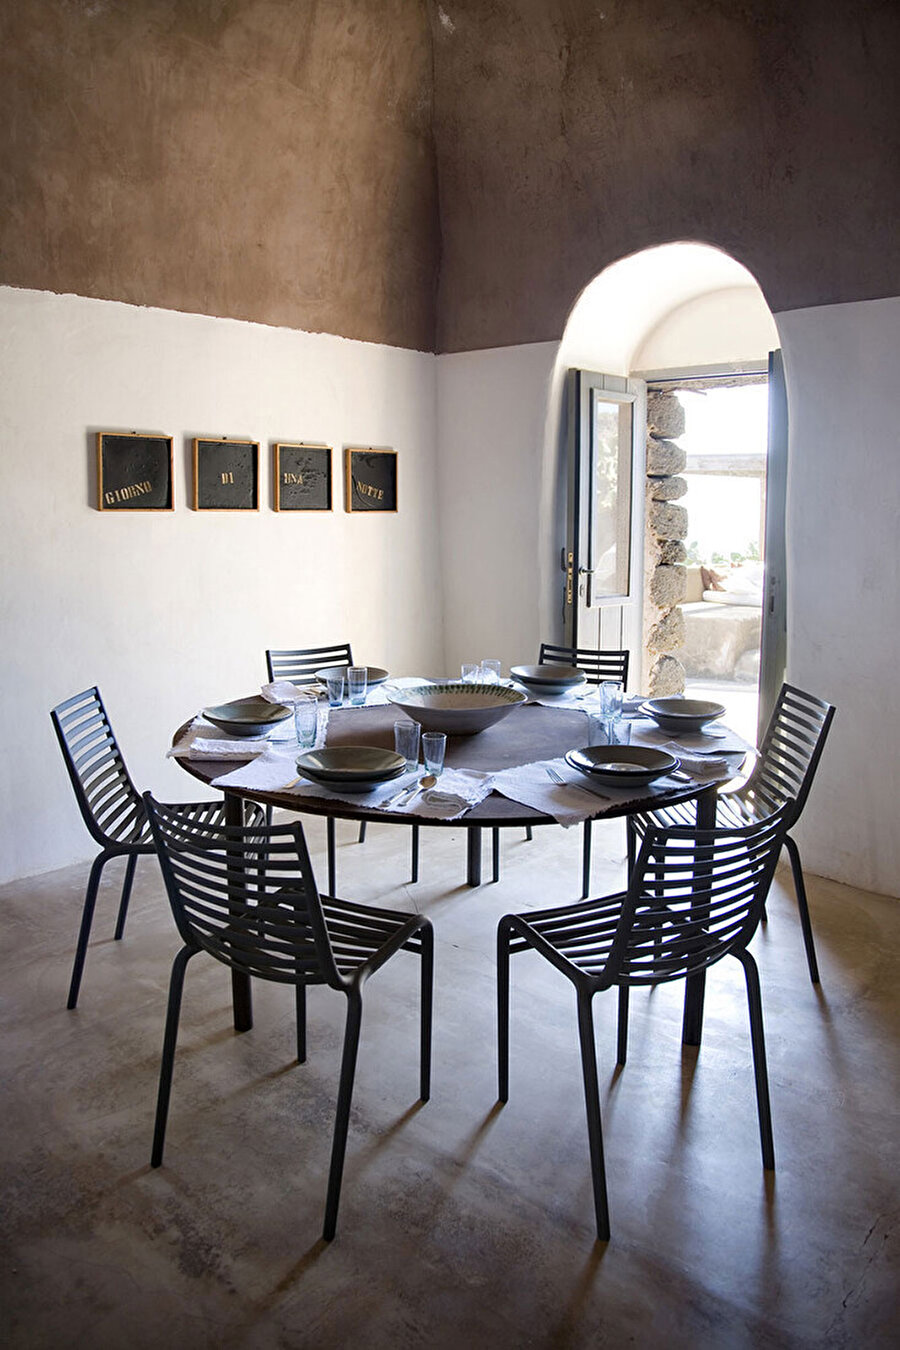 Mutfakta yuvarlak masanın etrafında, Starck'ın Driade imzalı pip-e sandalyeleri ve duvarda Luigi Stoisa'na ait bir çalışma bulunuyor.